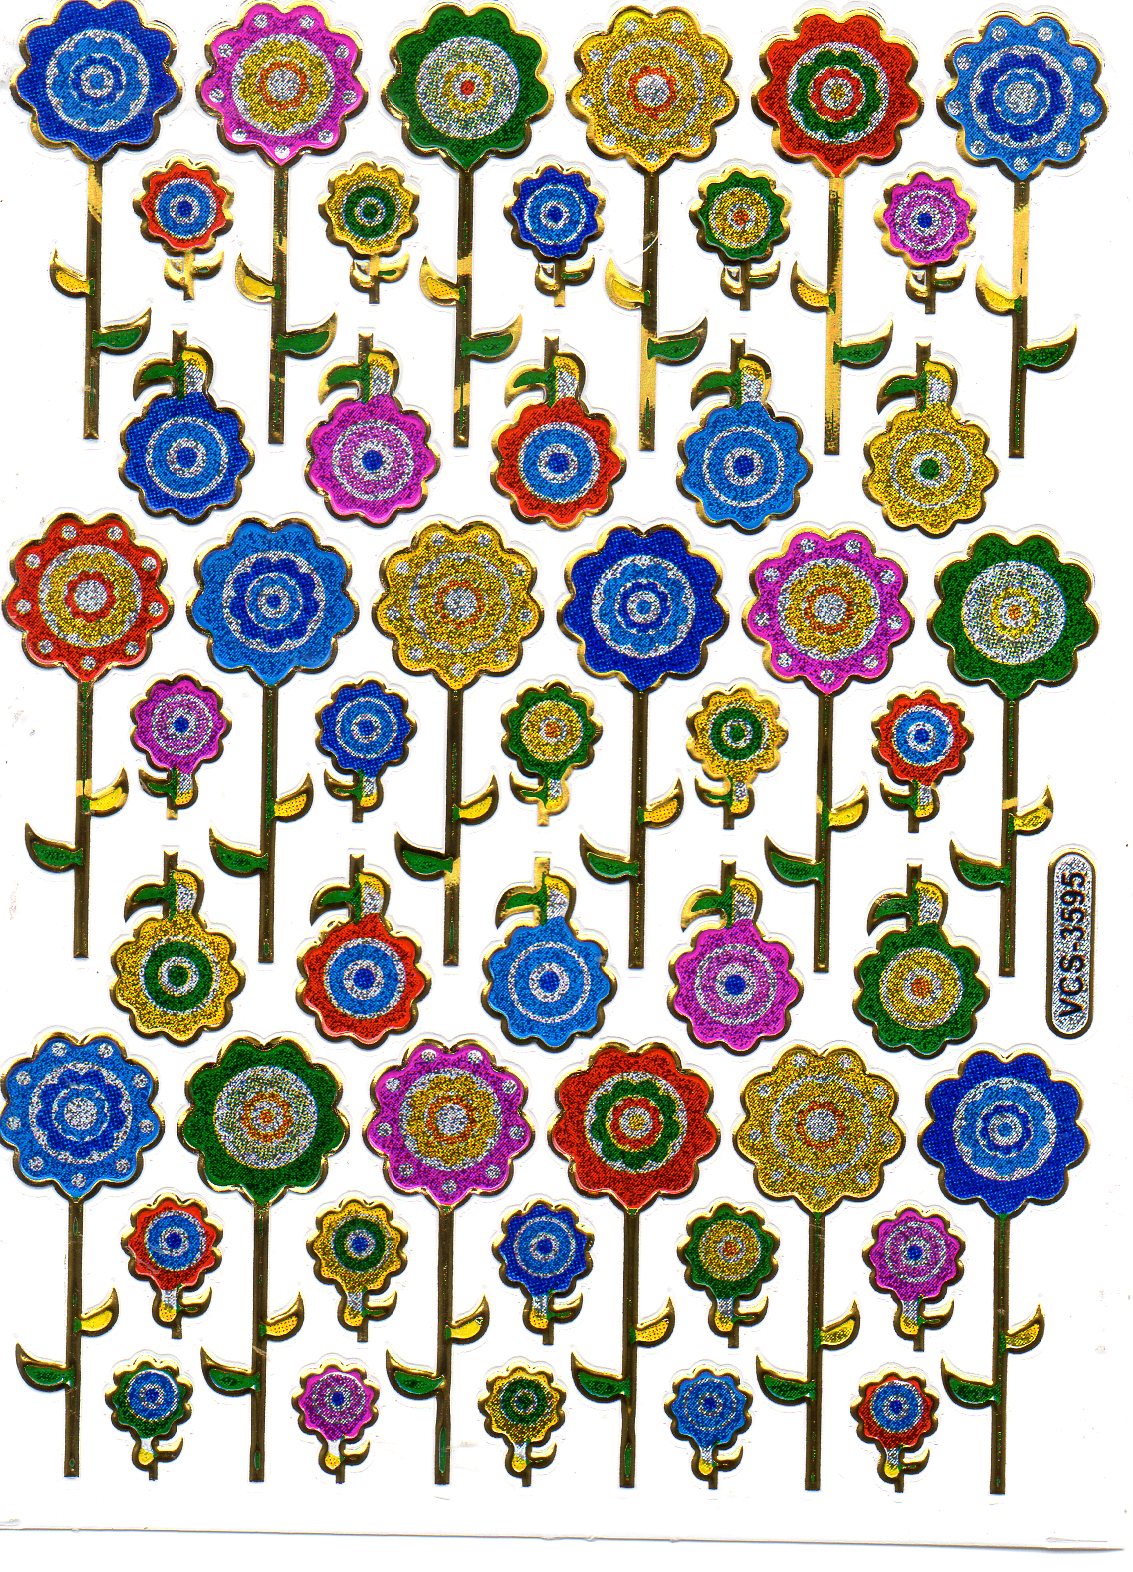 Sonnenblumen Blume Blumen bunt Aufkleber Sticker metallic Glitzer Effekt Kinder Basteln Kindergarten 1 Bogen 131